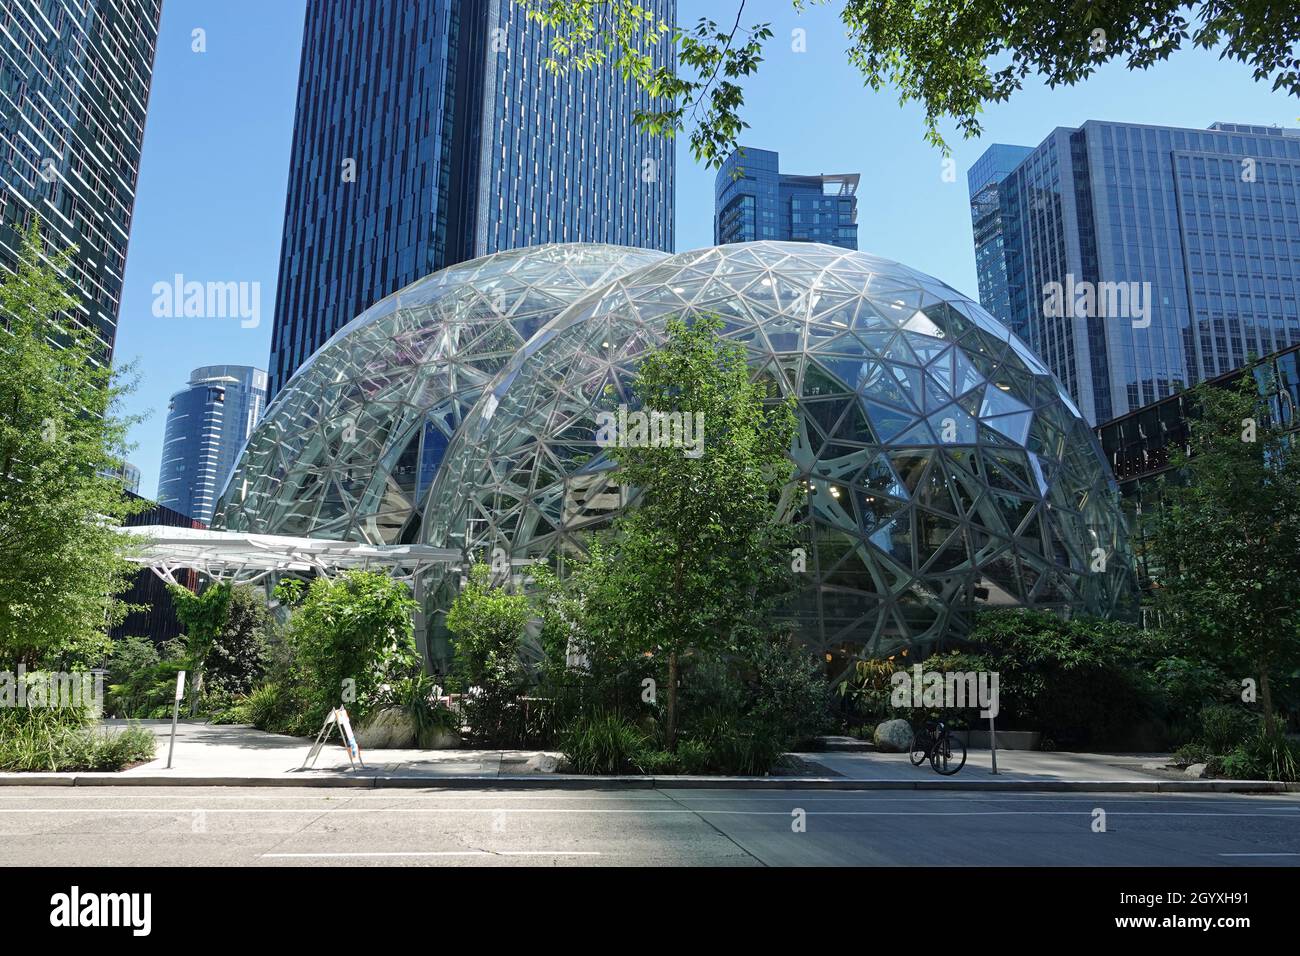 Seattle, WA / USA - 26 juin 2021: Le bâtiment de bureau en verre ultramodern connu sous le nom de sphères d'Amazone (ou sphères de Seattle) est montré pendant la journée. Banque D'Images